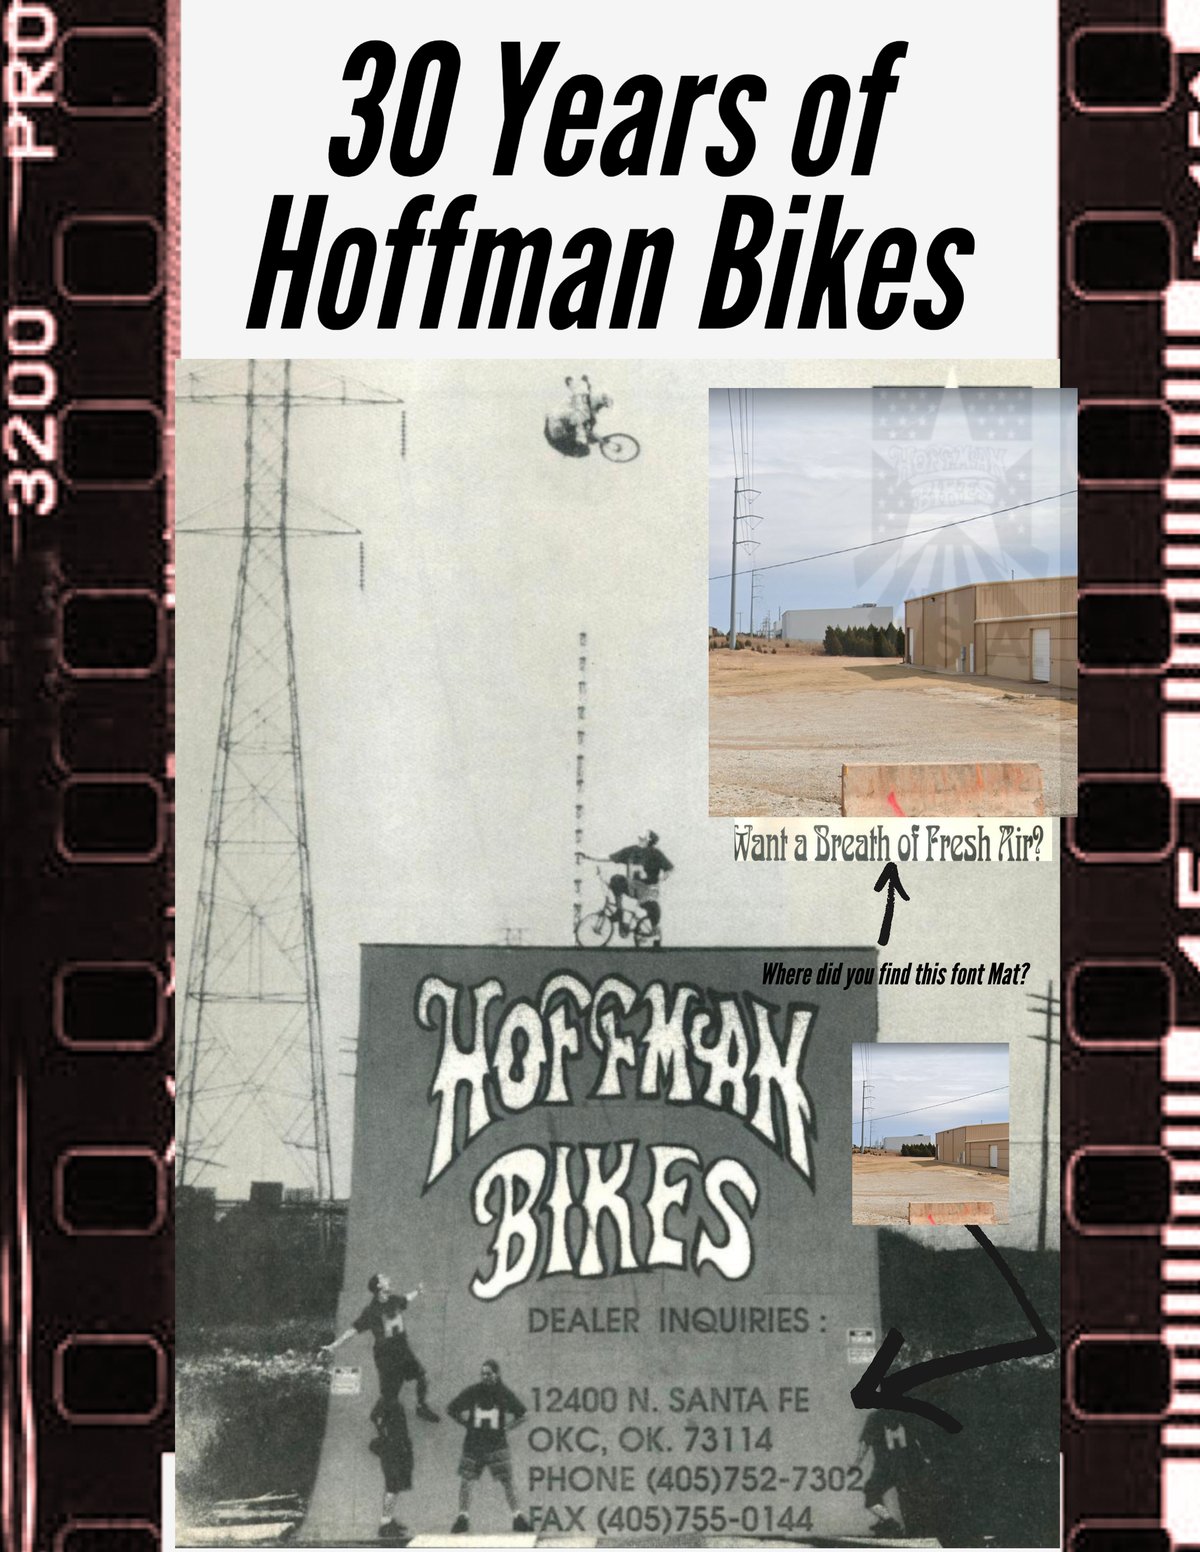 30 Years of Hoffman Bikes